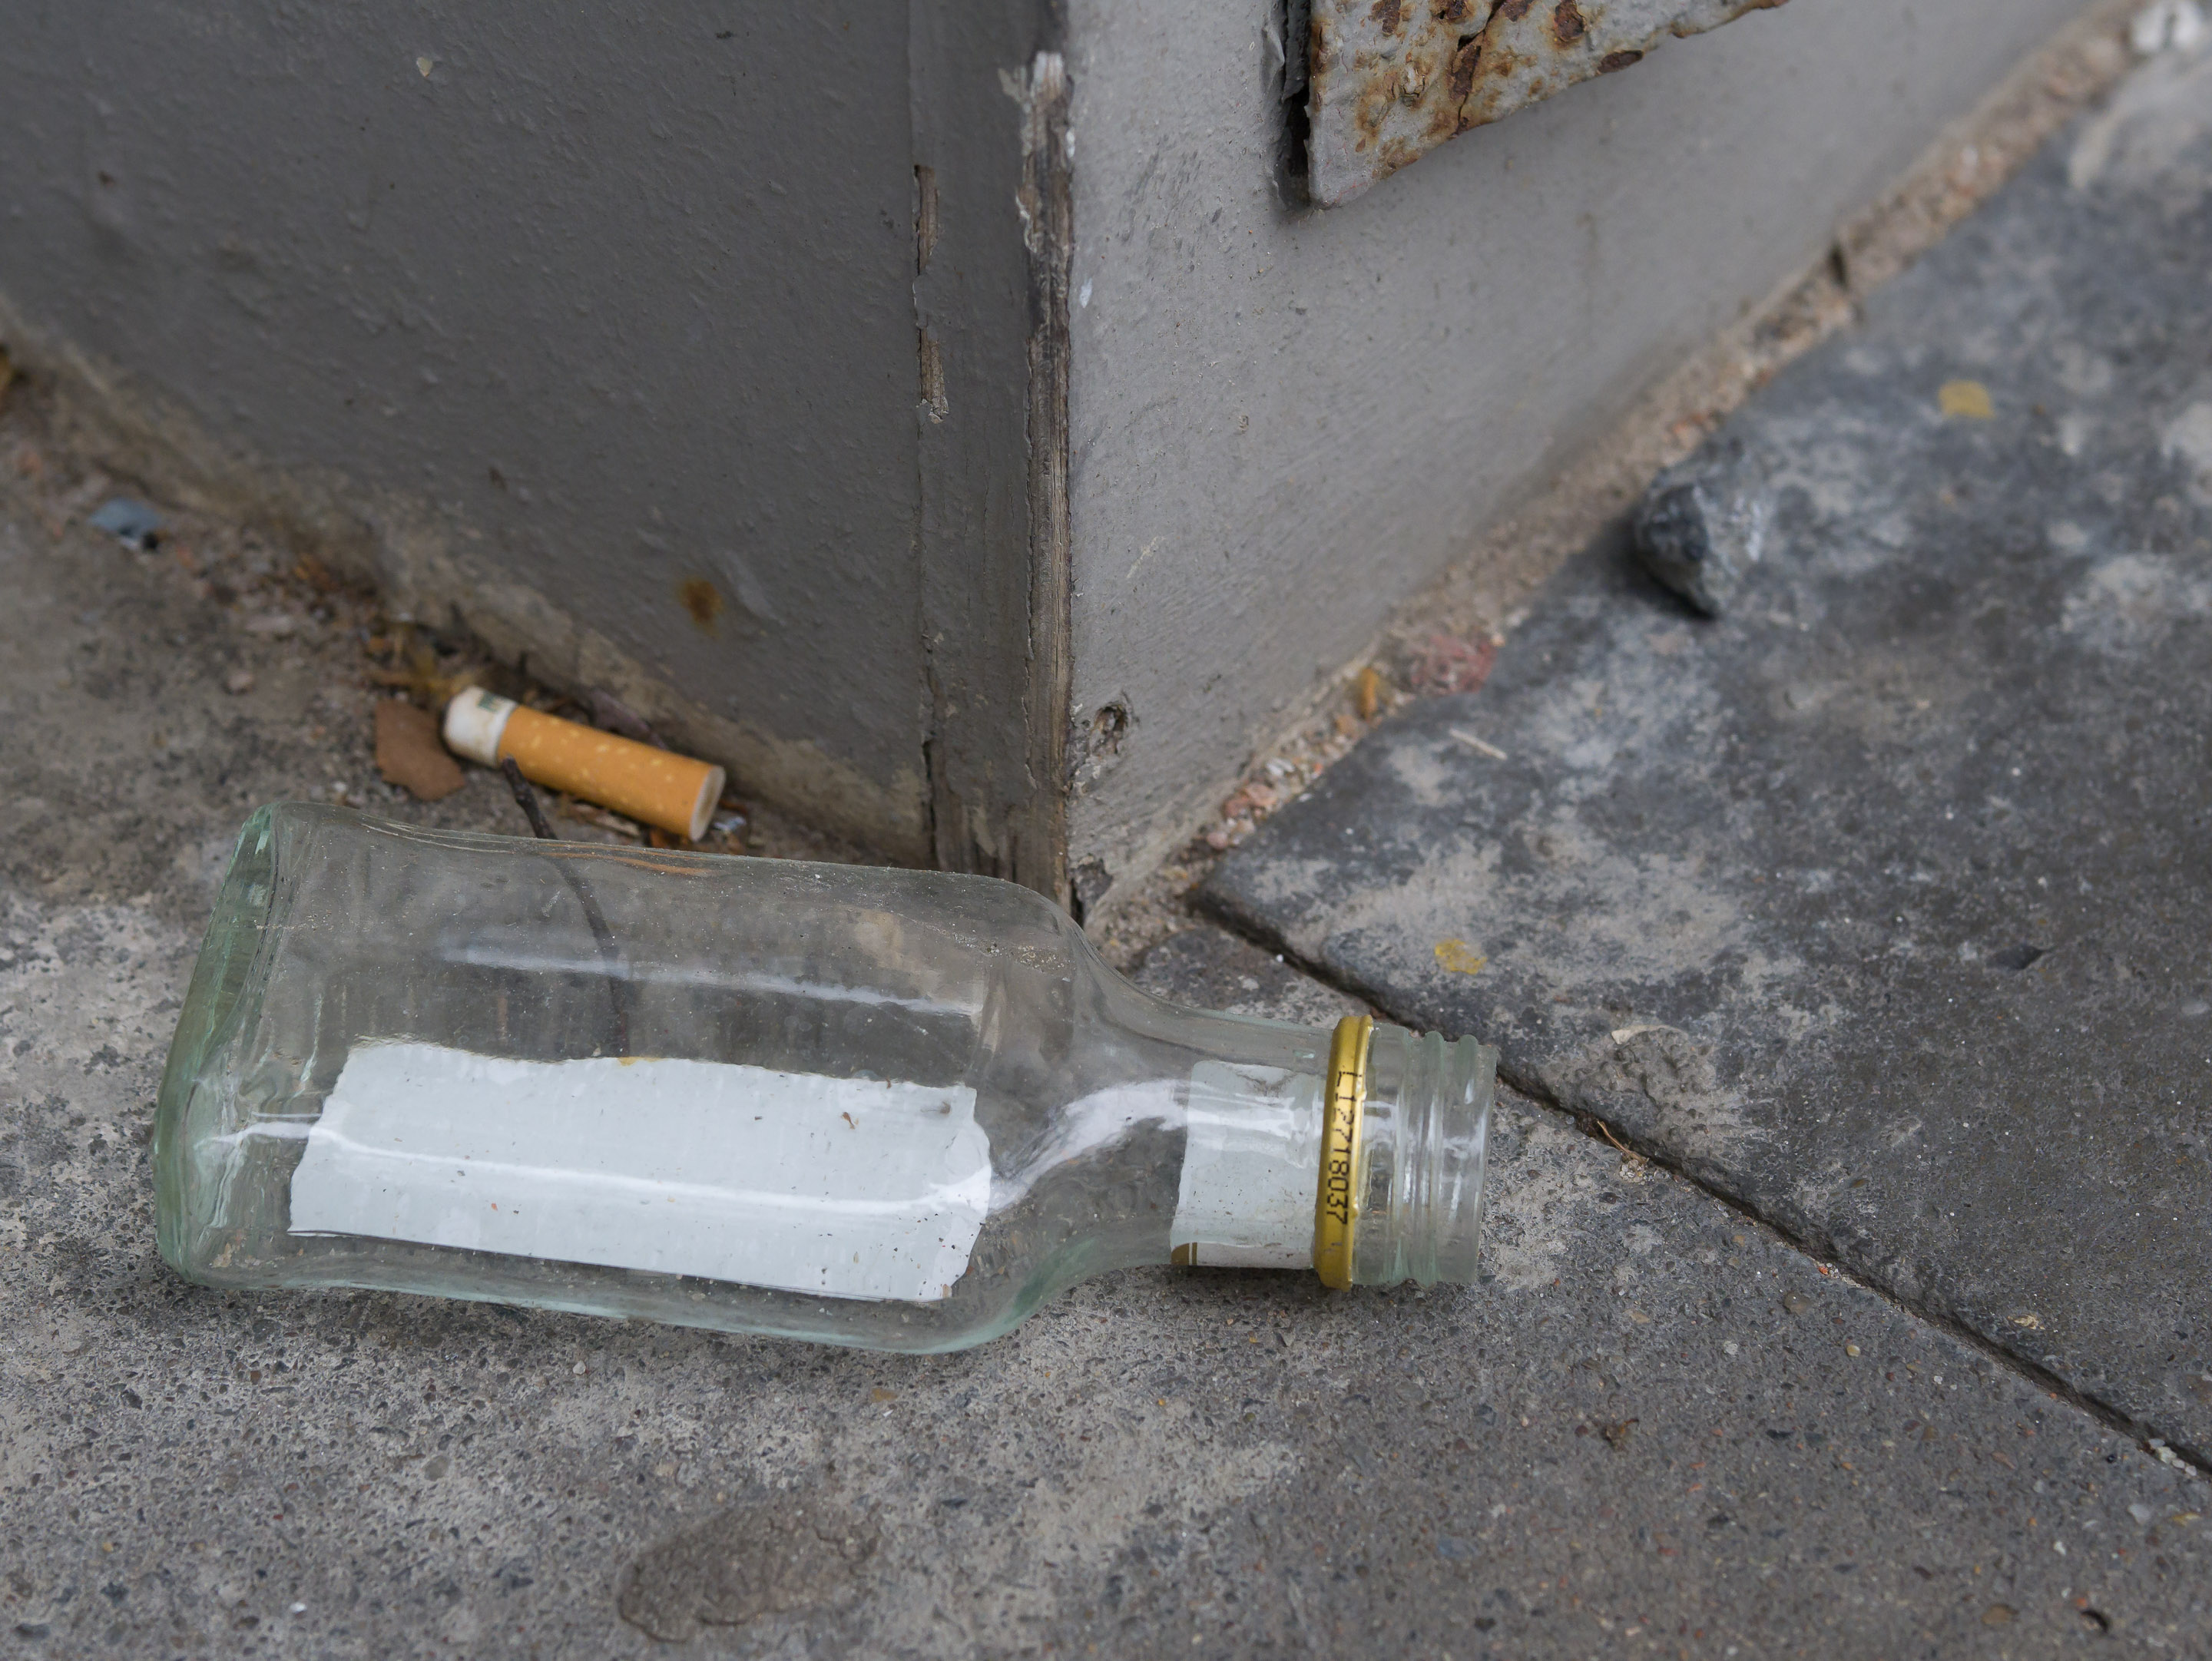 Schnapsflasche und Zigarettenkippe auf Betonplatten vor Gebäudeecke